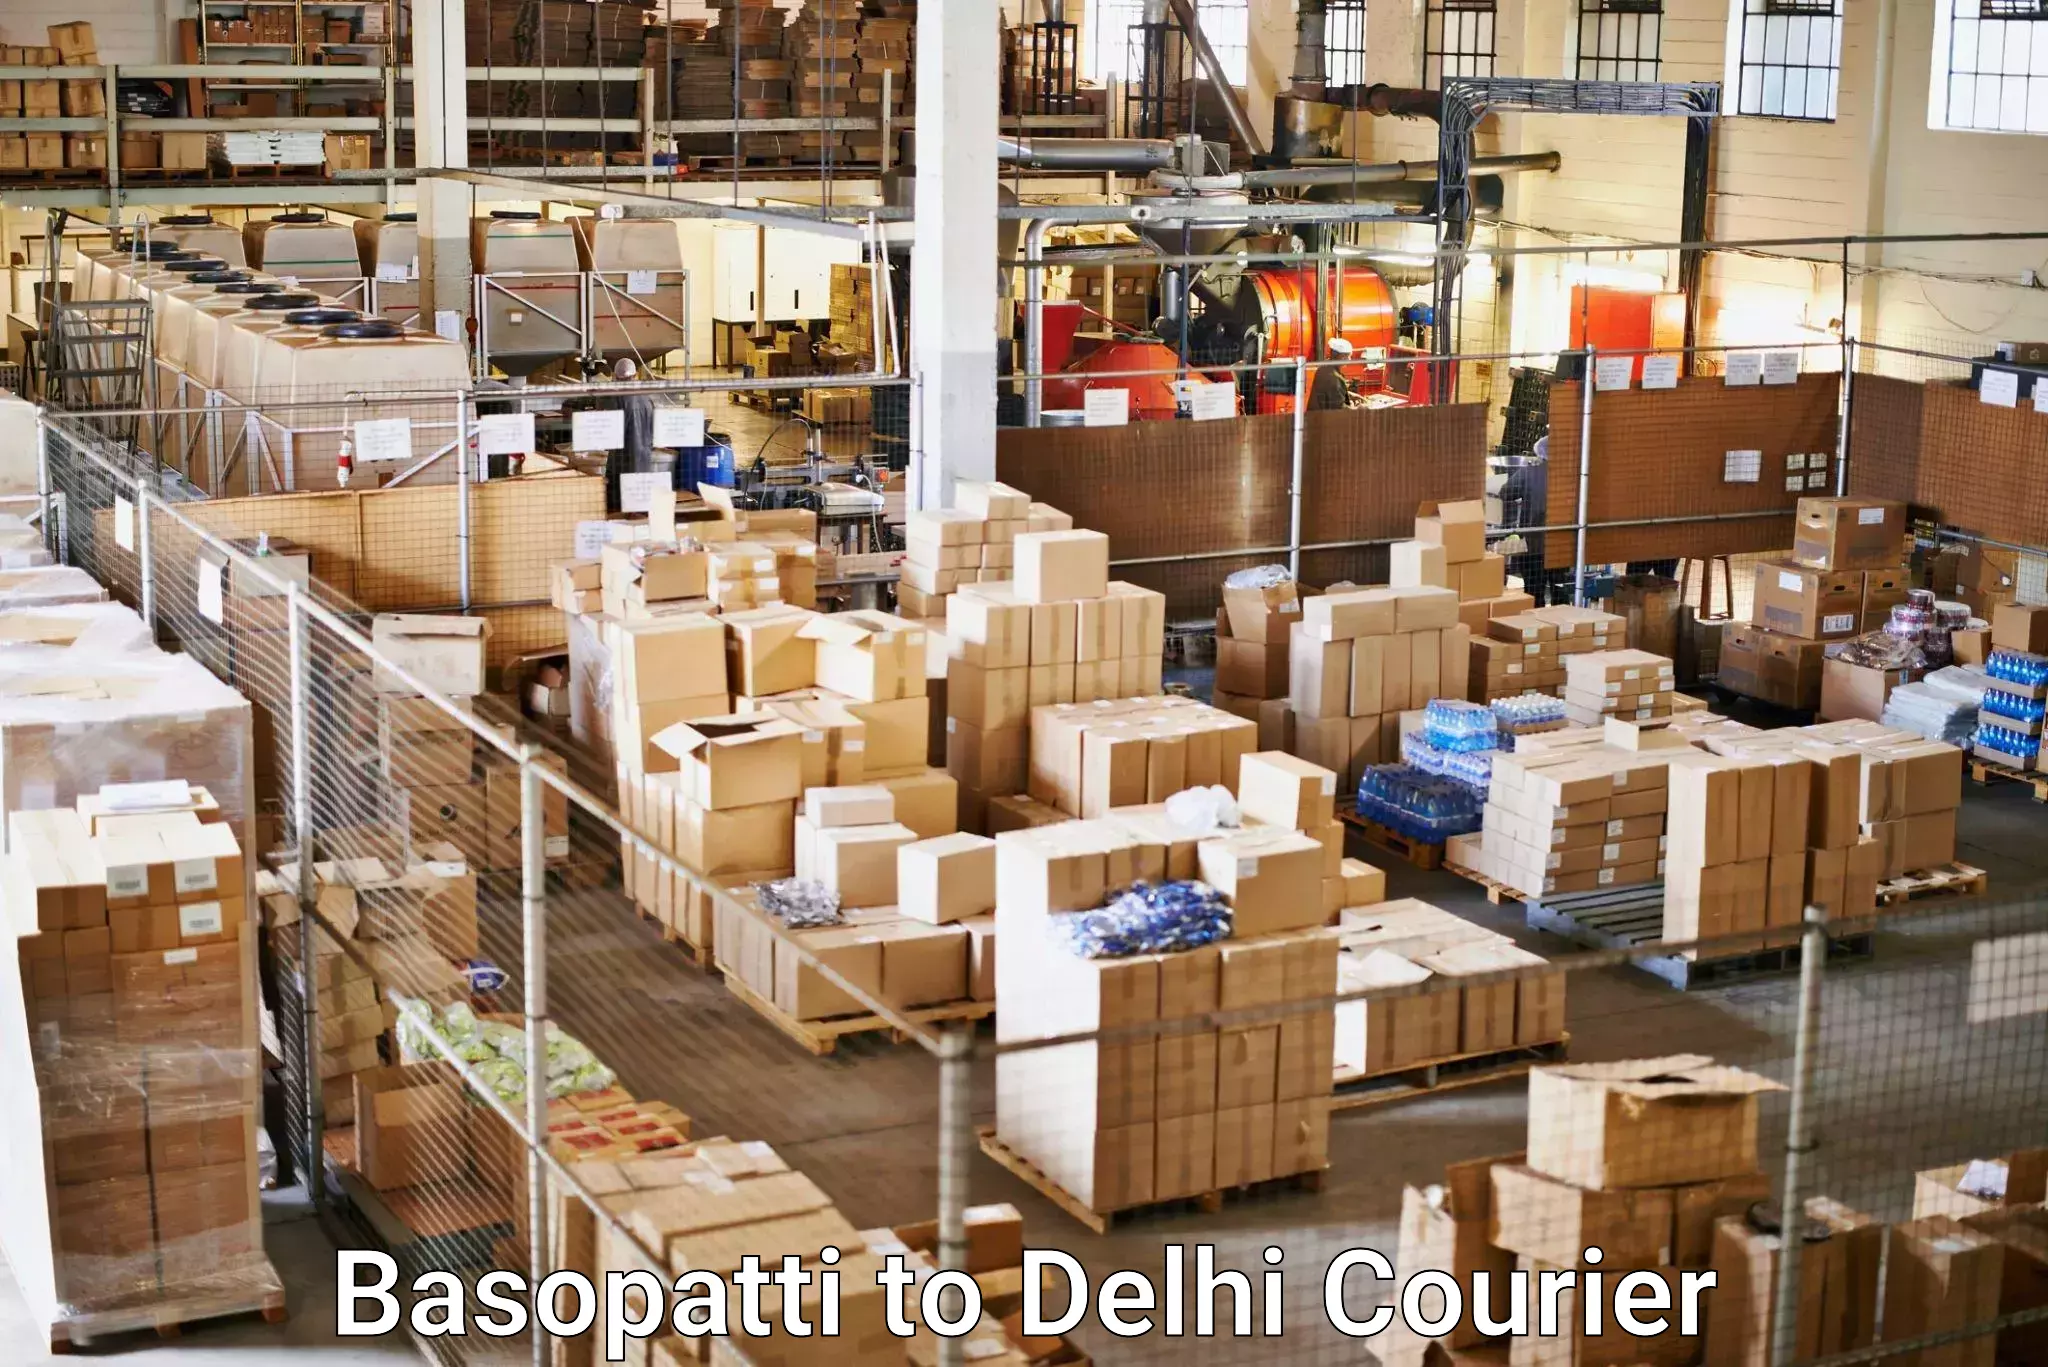 On-demand shipping options Basopatti to Subhash Nagar